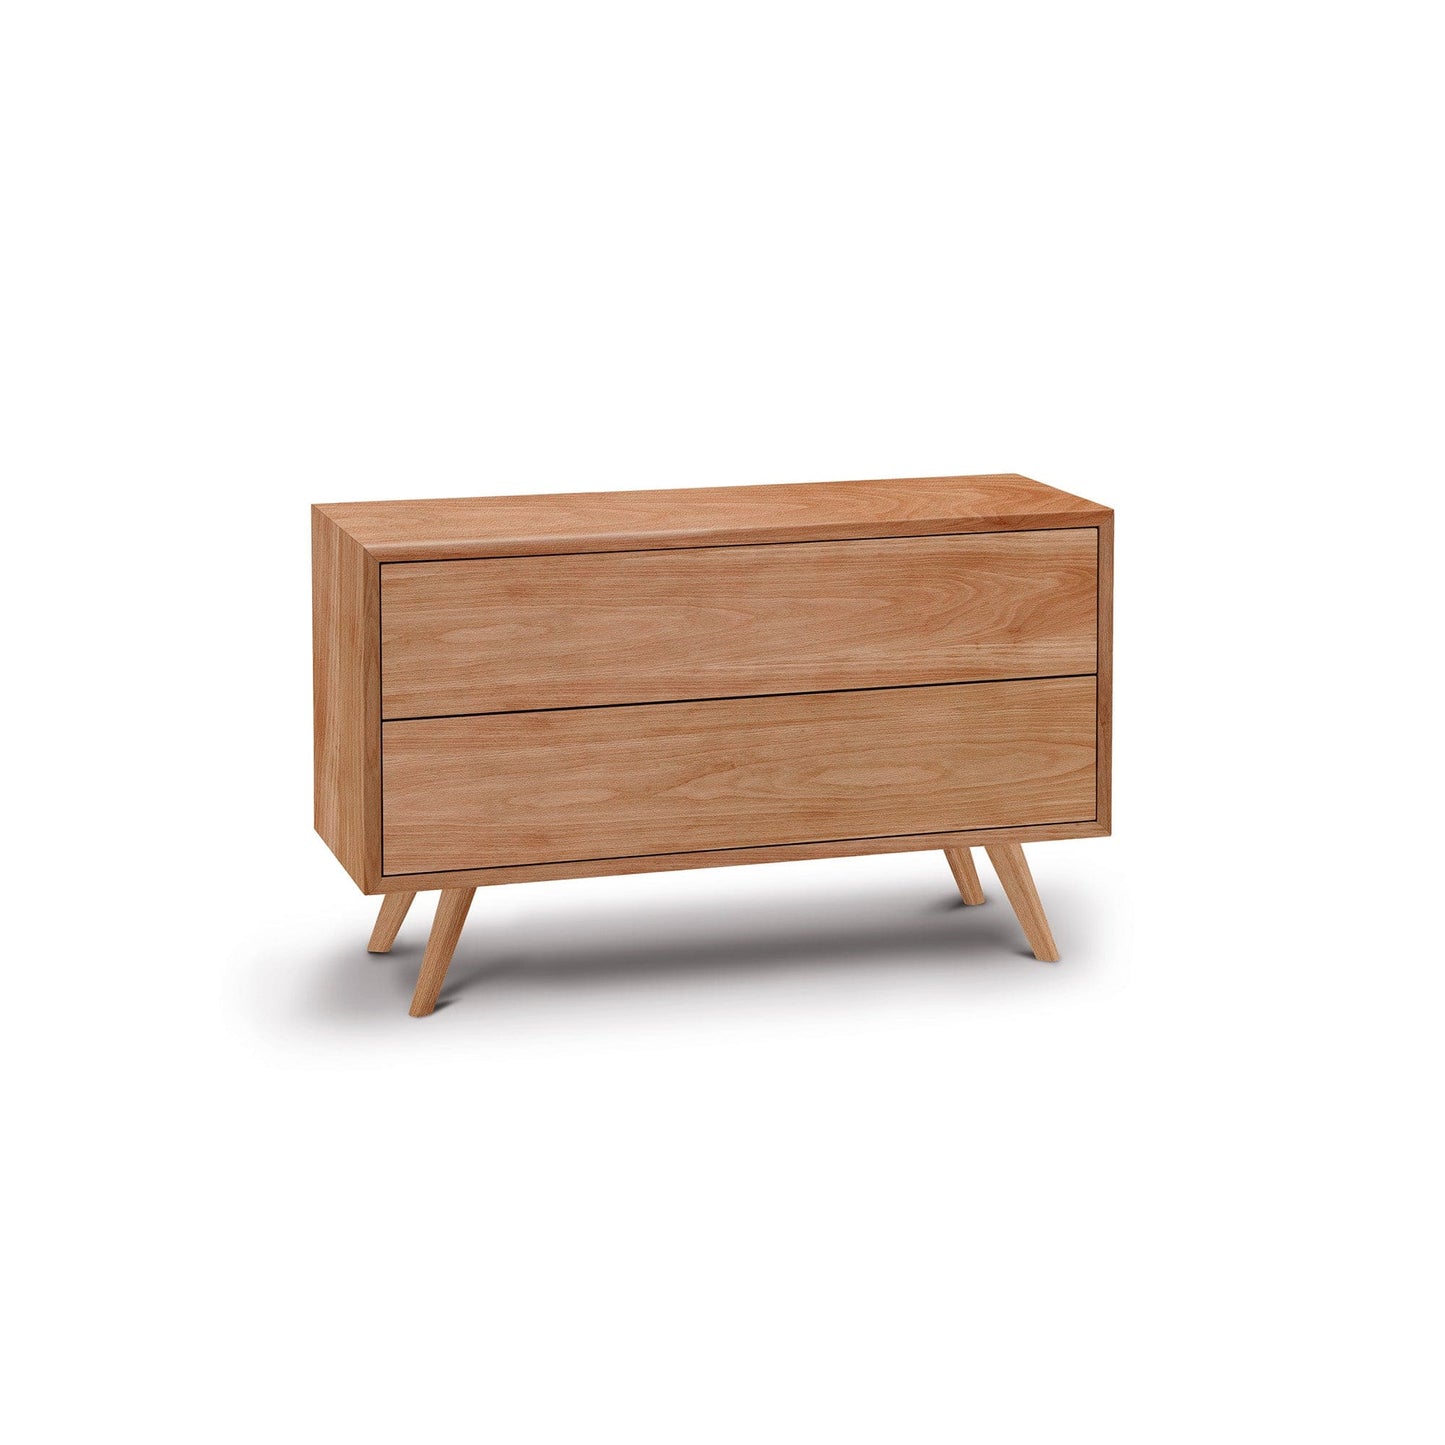 Holzmanufaktur Massivholzmöbel mit Schubkasten für Ihr gesundes Schlafzimmer